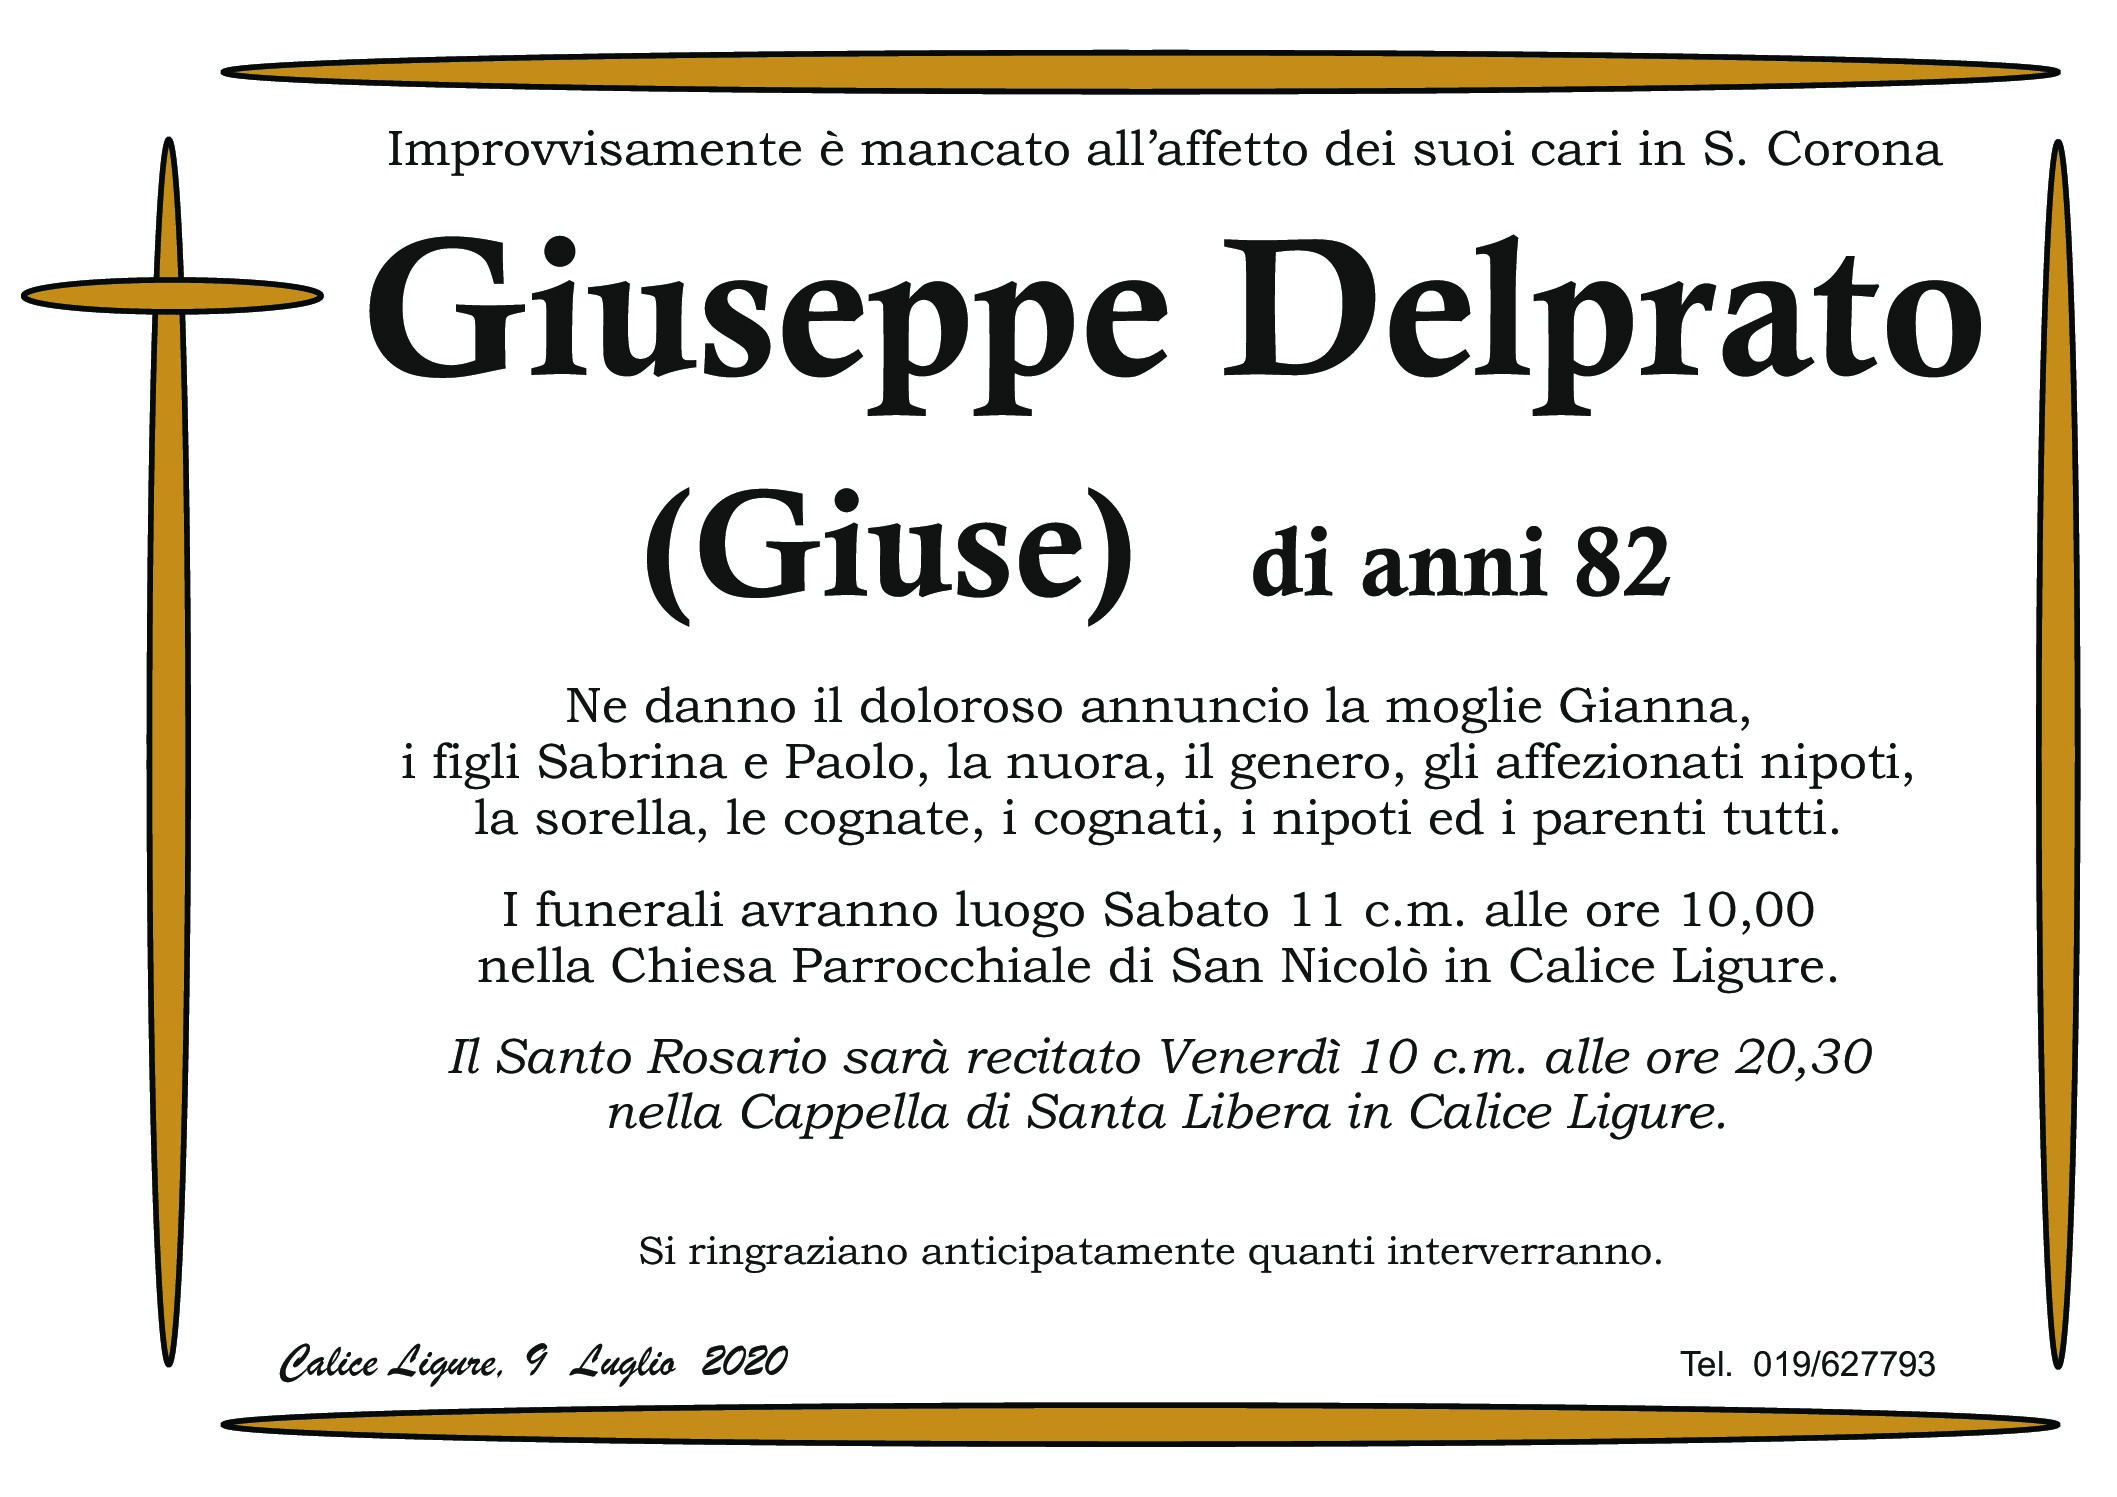 Delprato Giuseppe